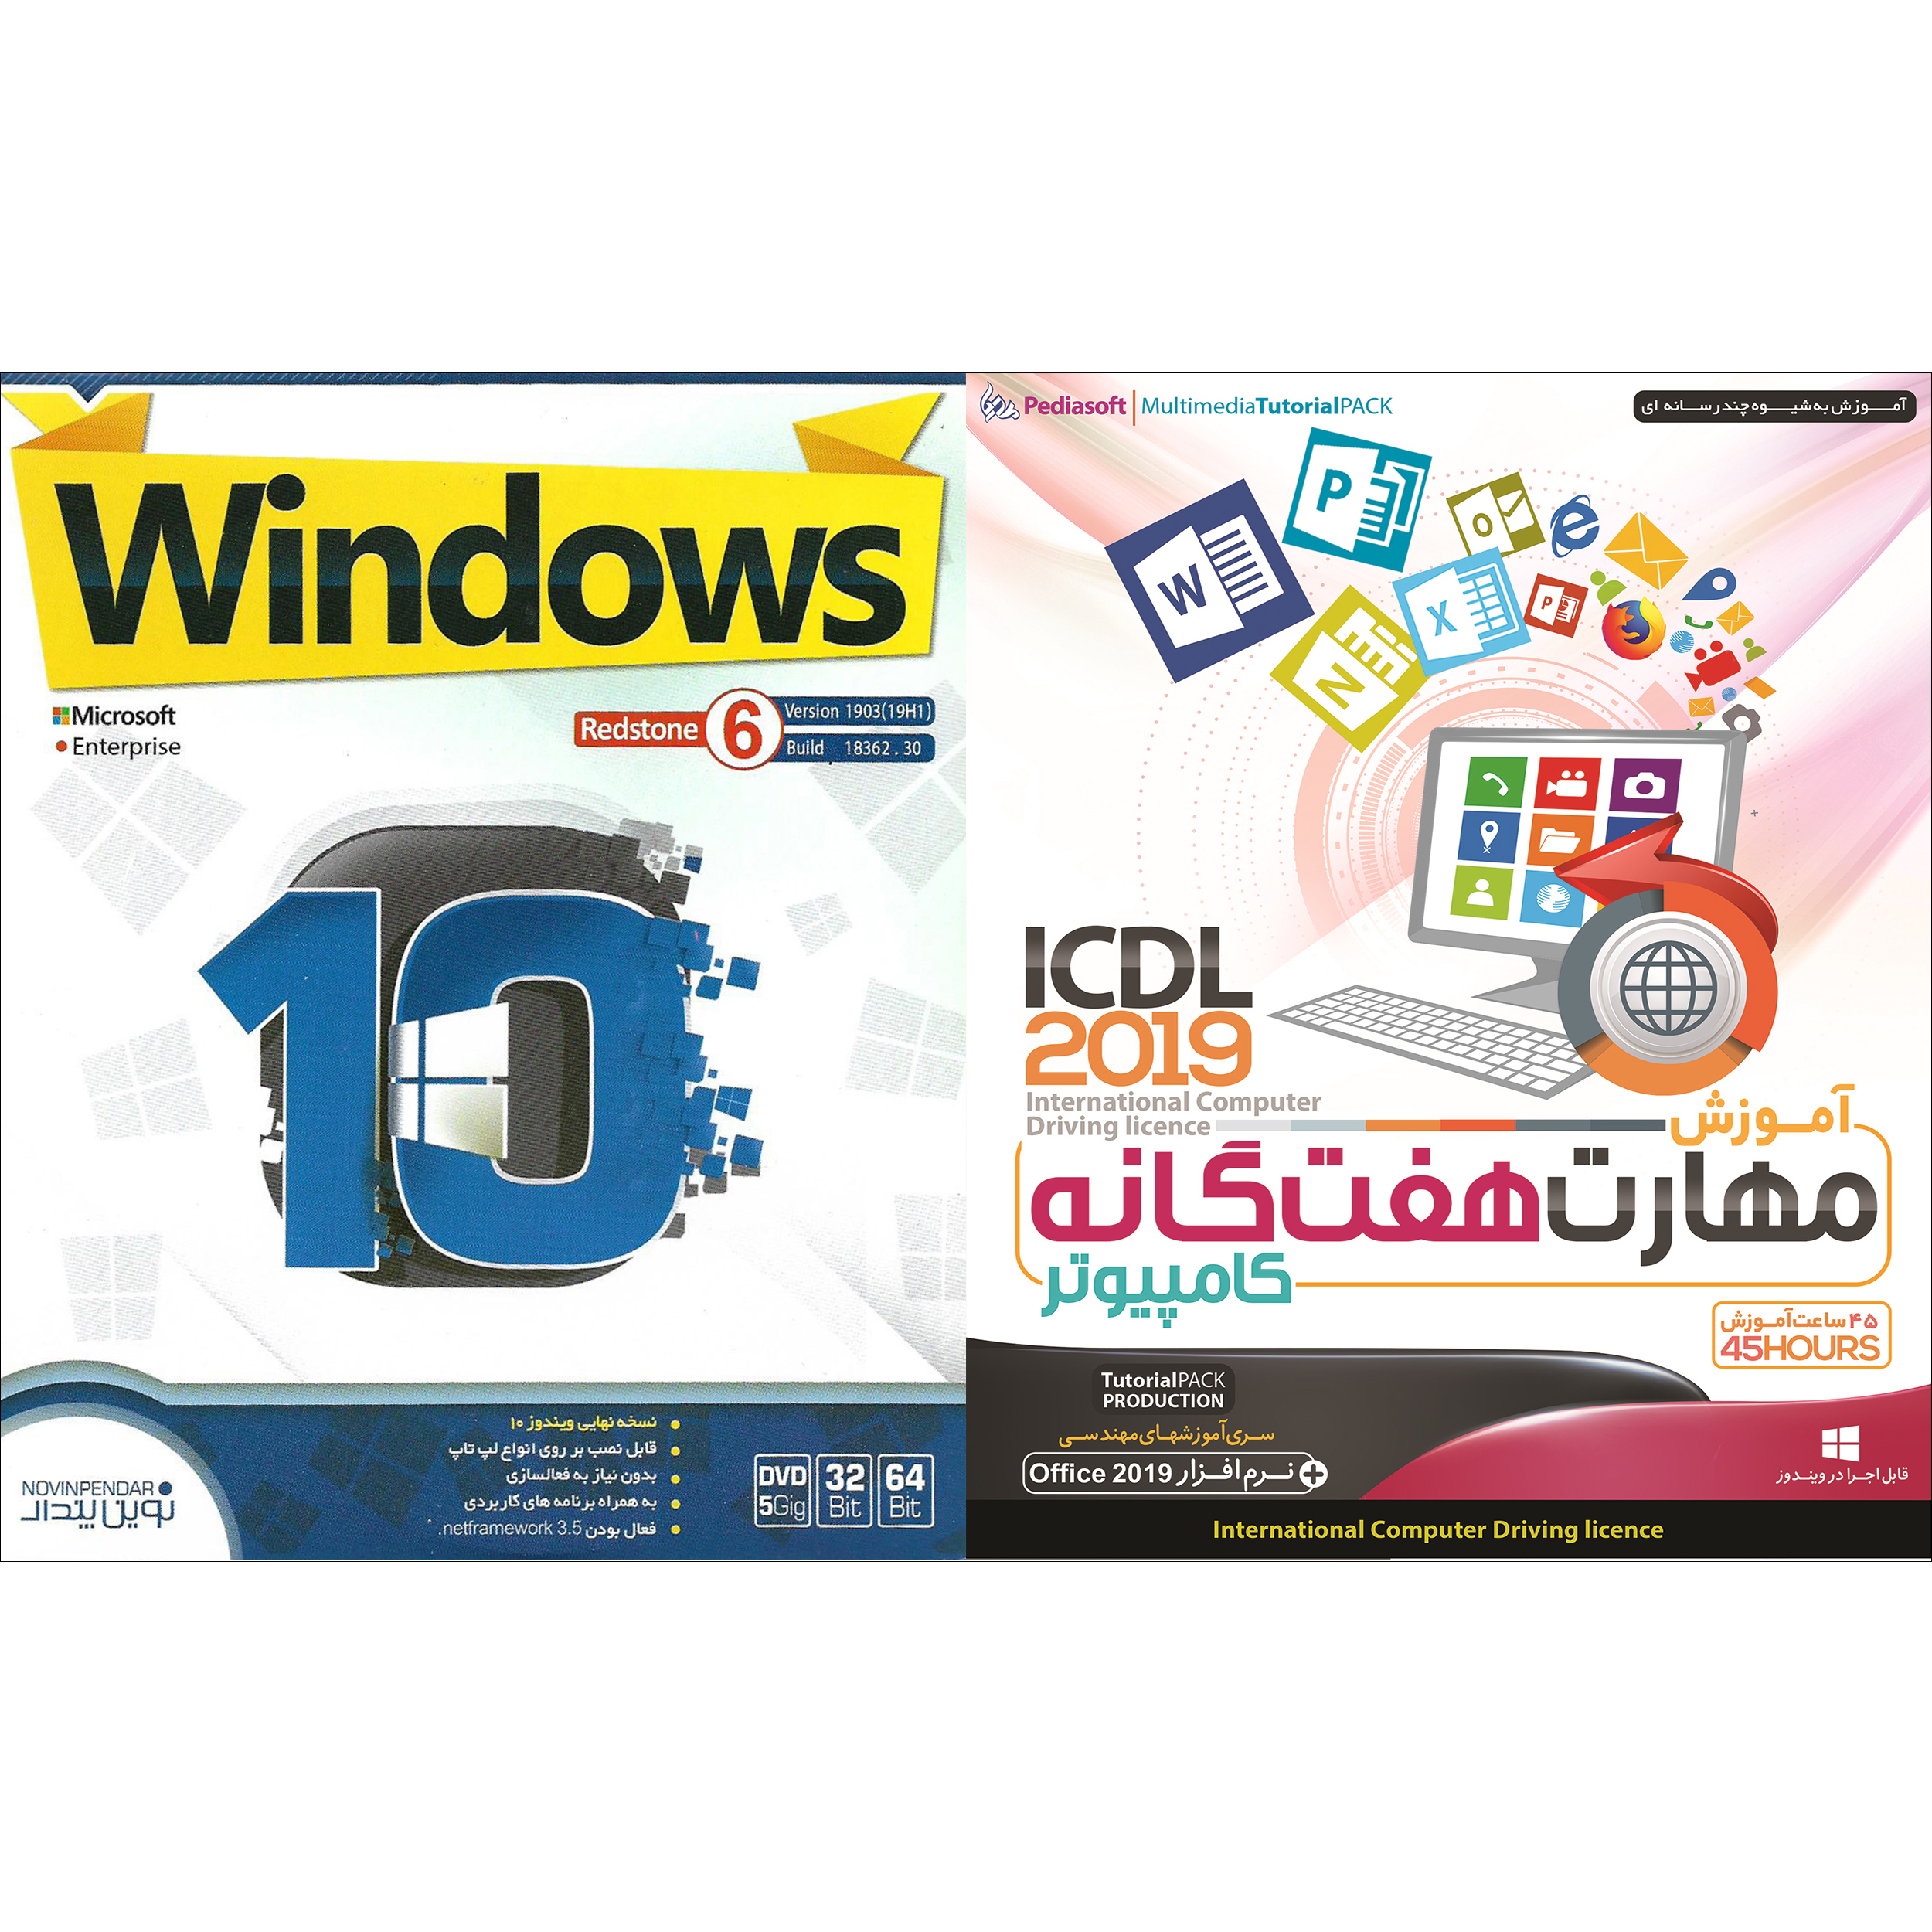 نرم افزار آموزش مهارت هفتگانه کامپیوتر ICDL 2019 نشر پدیا سافت به همراه سیستم عامل windows 10 نشر نوین پندار